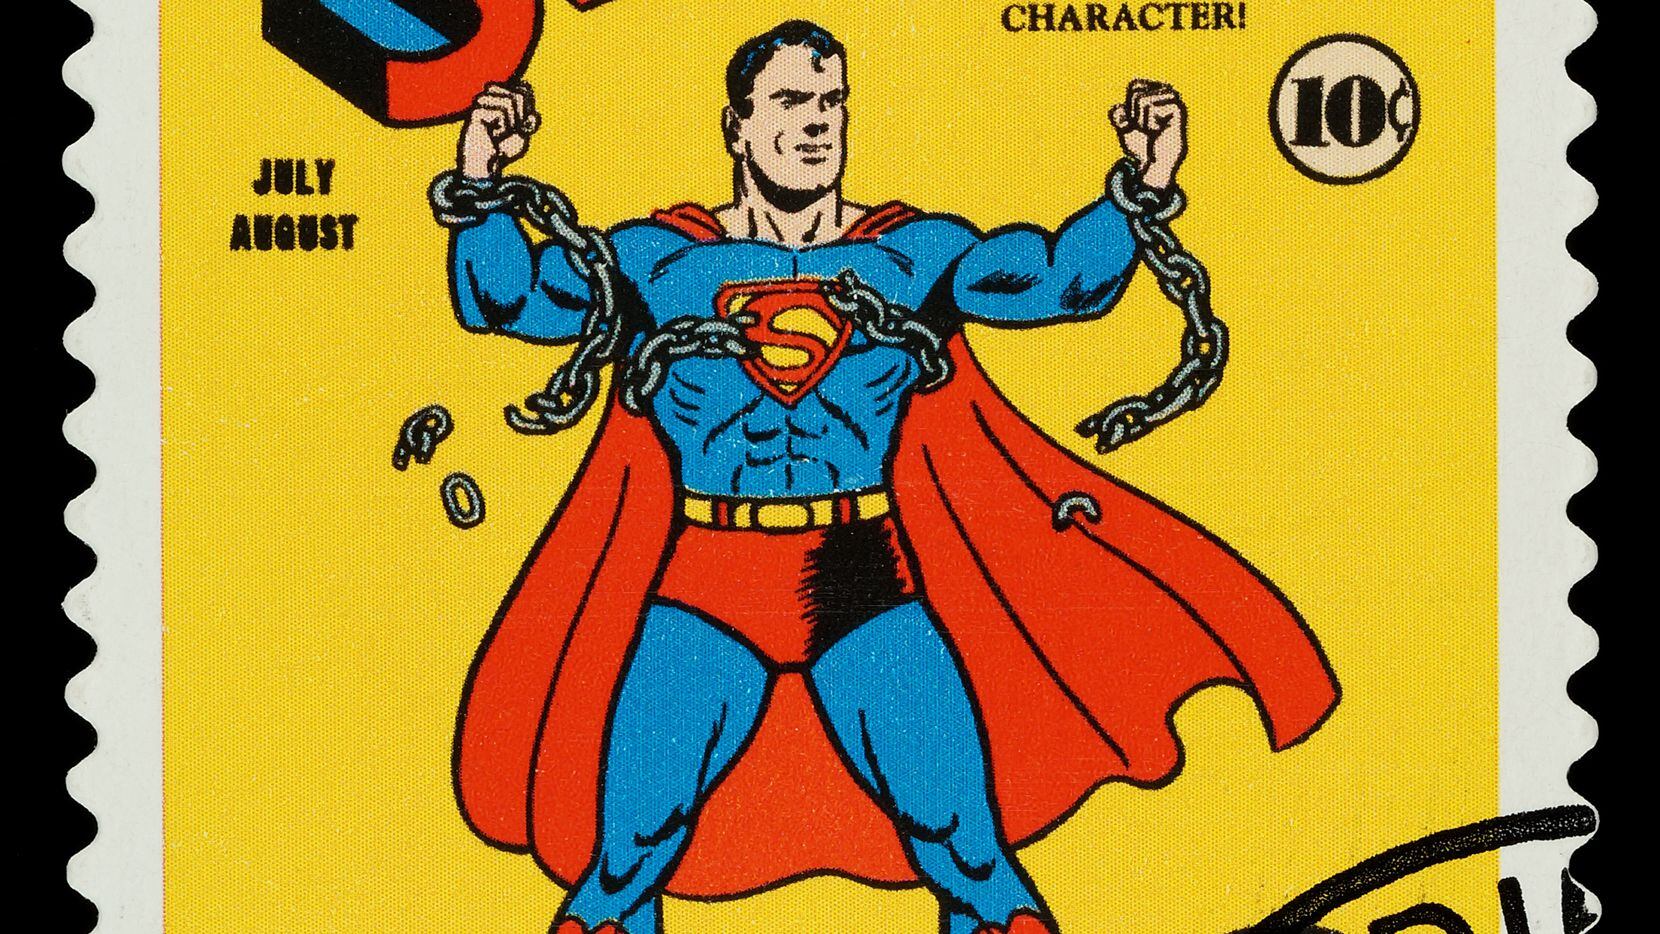 Esta imagen muestra un timbre postal conmemorando al héroe del comic Superman. El timber fue impreso en 2006.